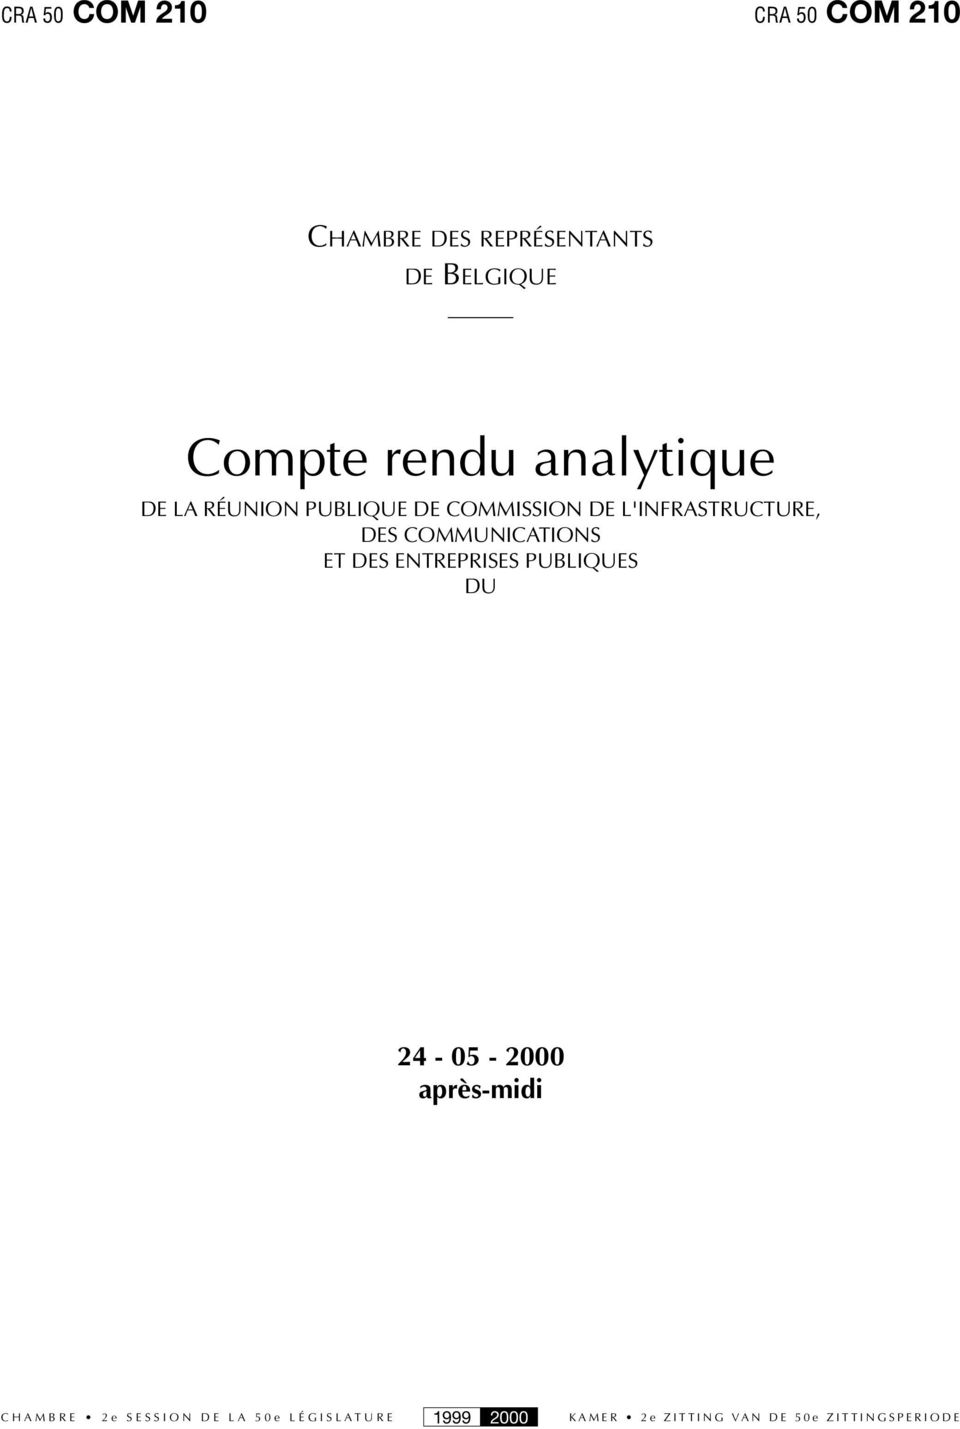 PUBLIQUE DE COMMISSION DE L'INFRASTRUCTURE, DES